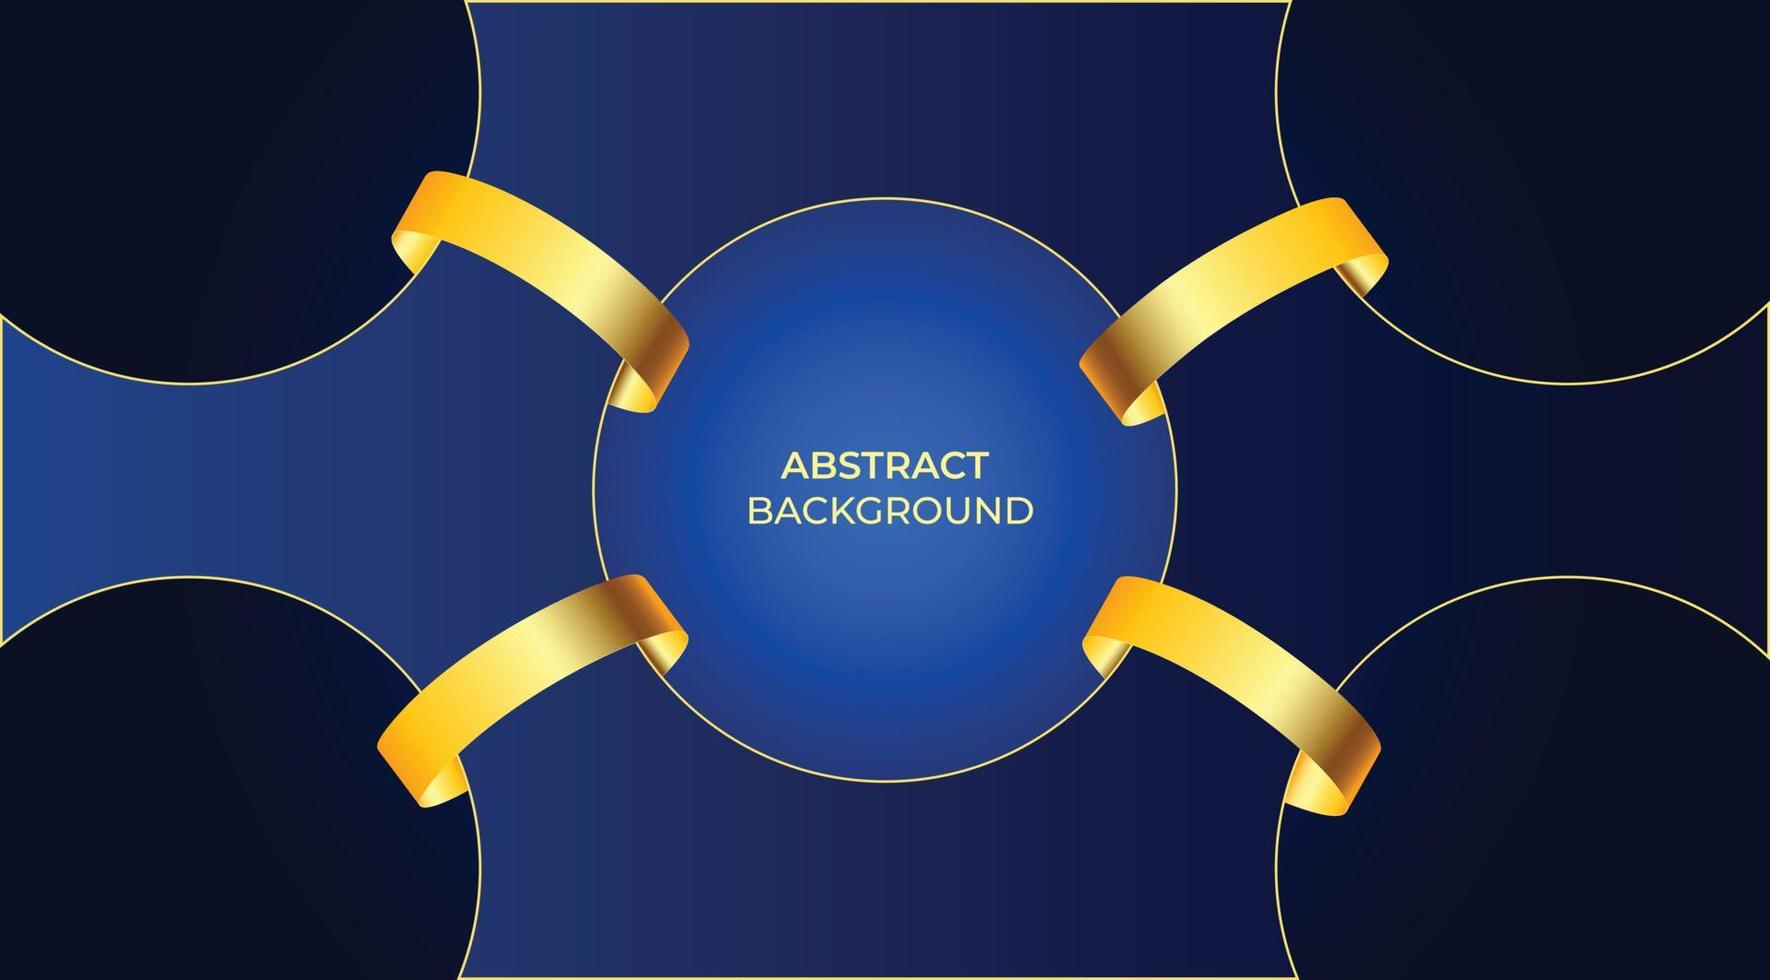 astratto geometrico blu royal premi d'oro grafica sfondo. modello di disegno vettoriale moderno.